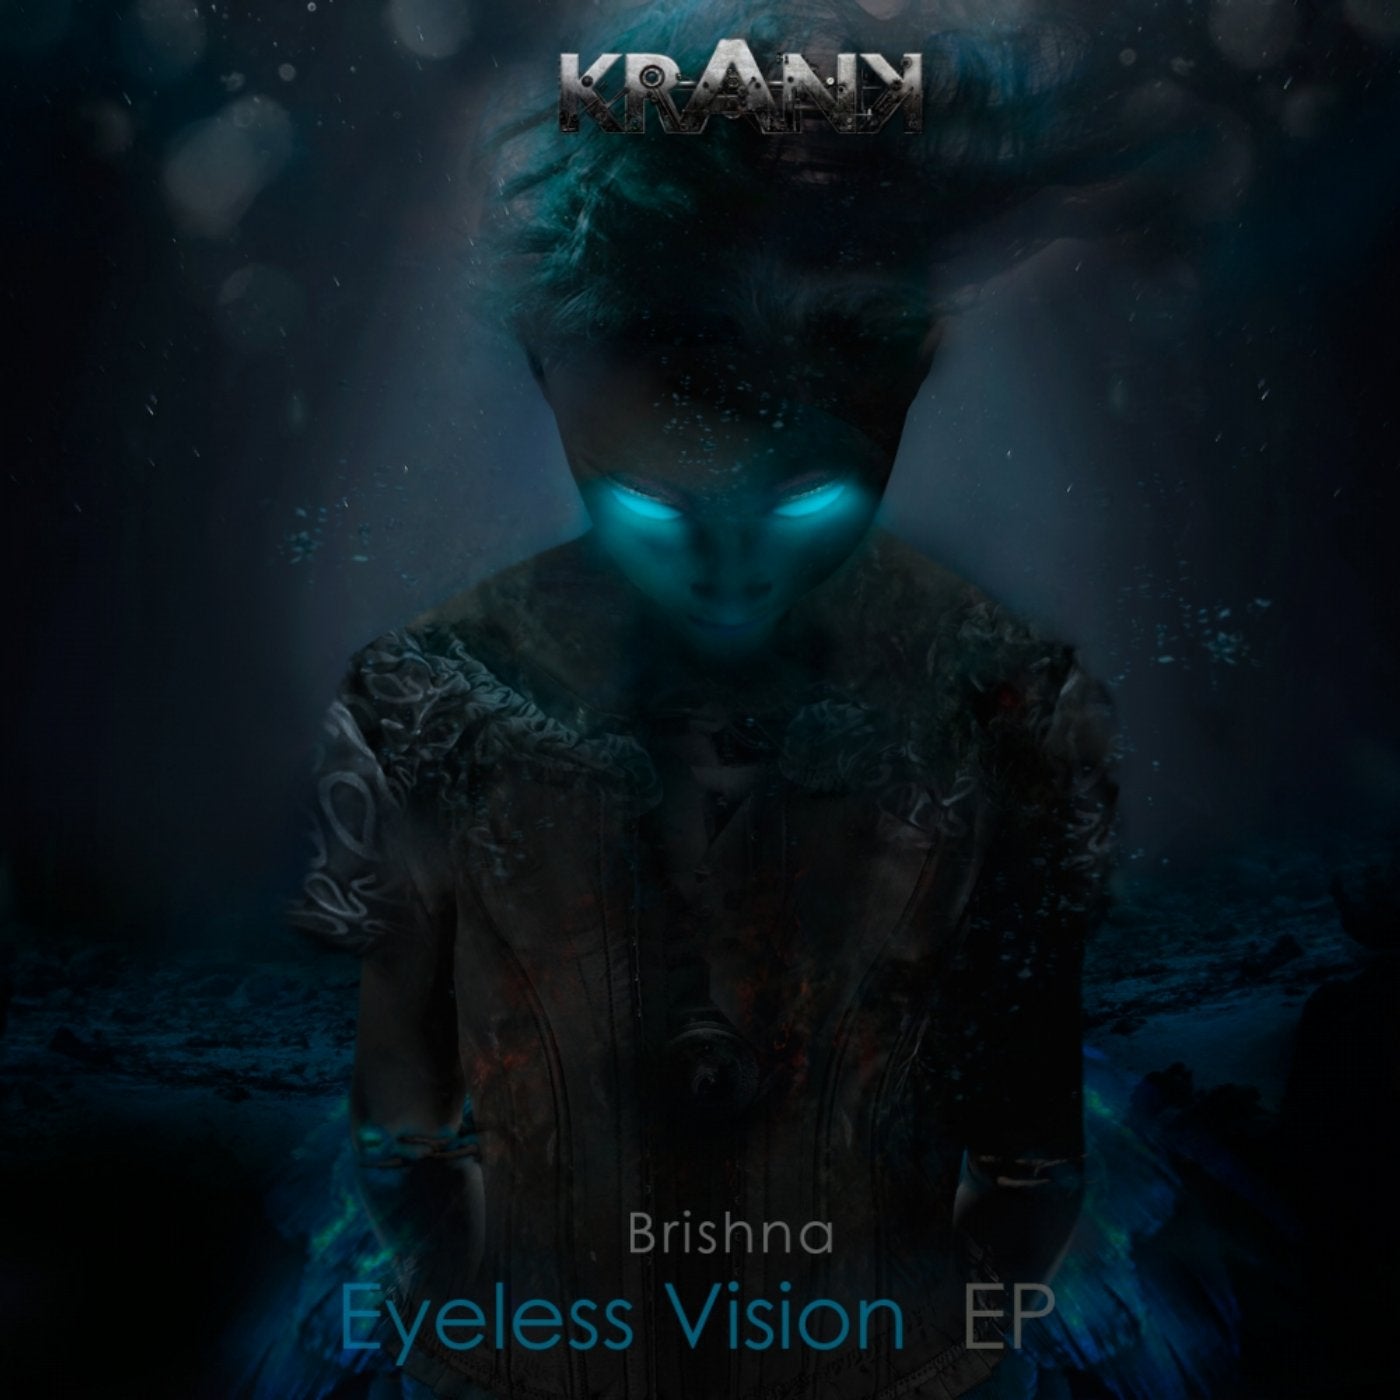 Eyeless Vision EP